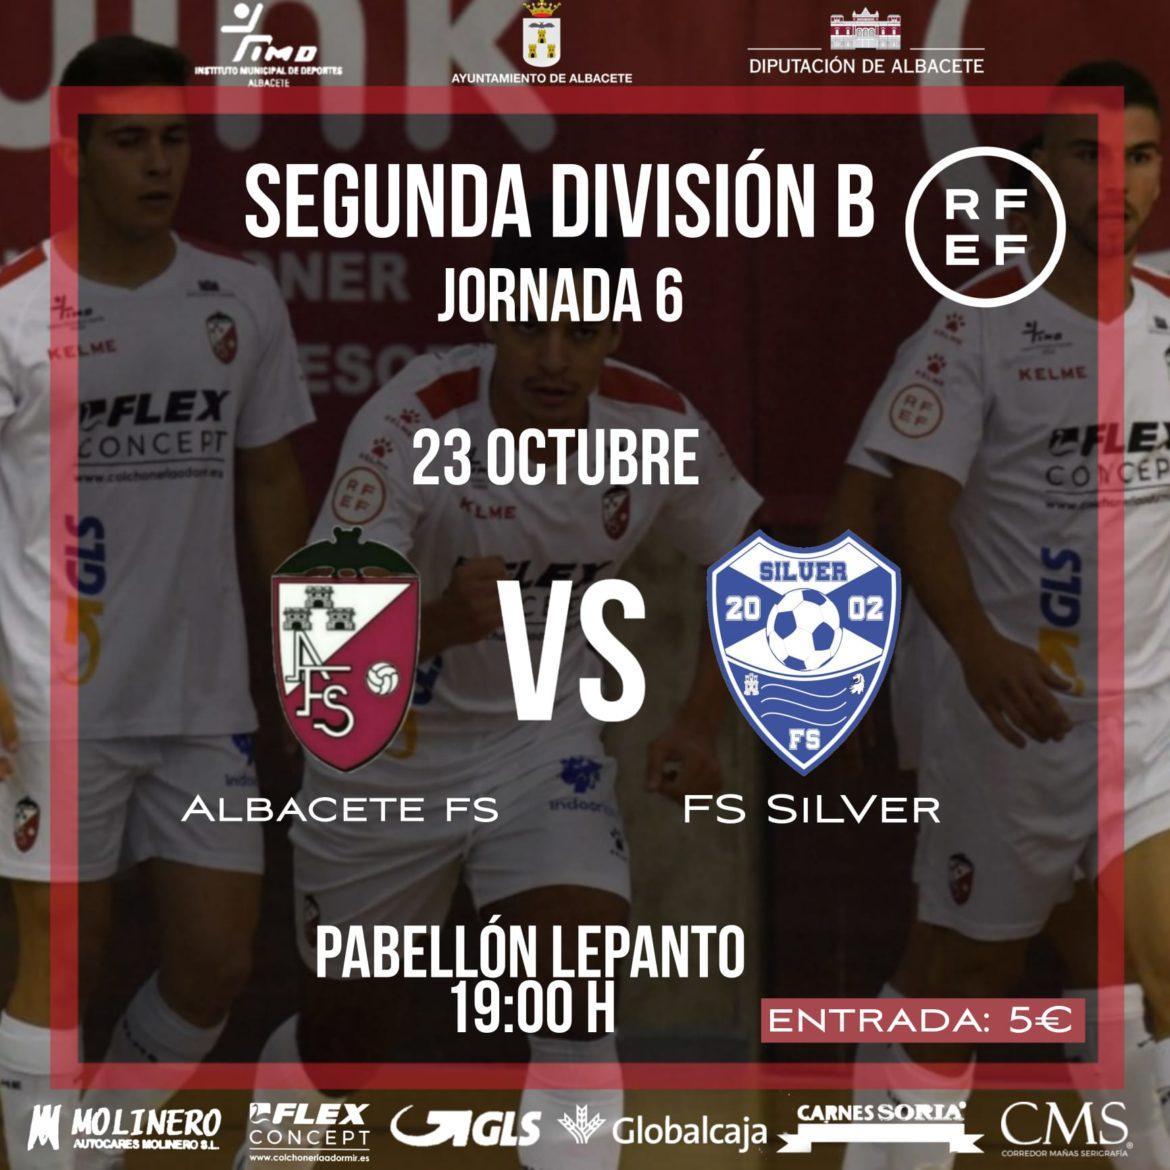 Albacete FS | Las previas de los conjuntos masculino y femenino.